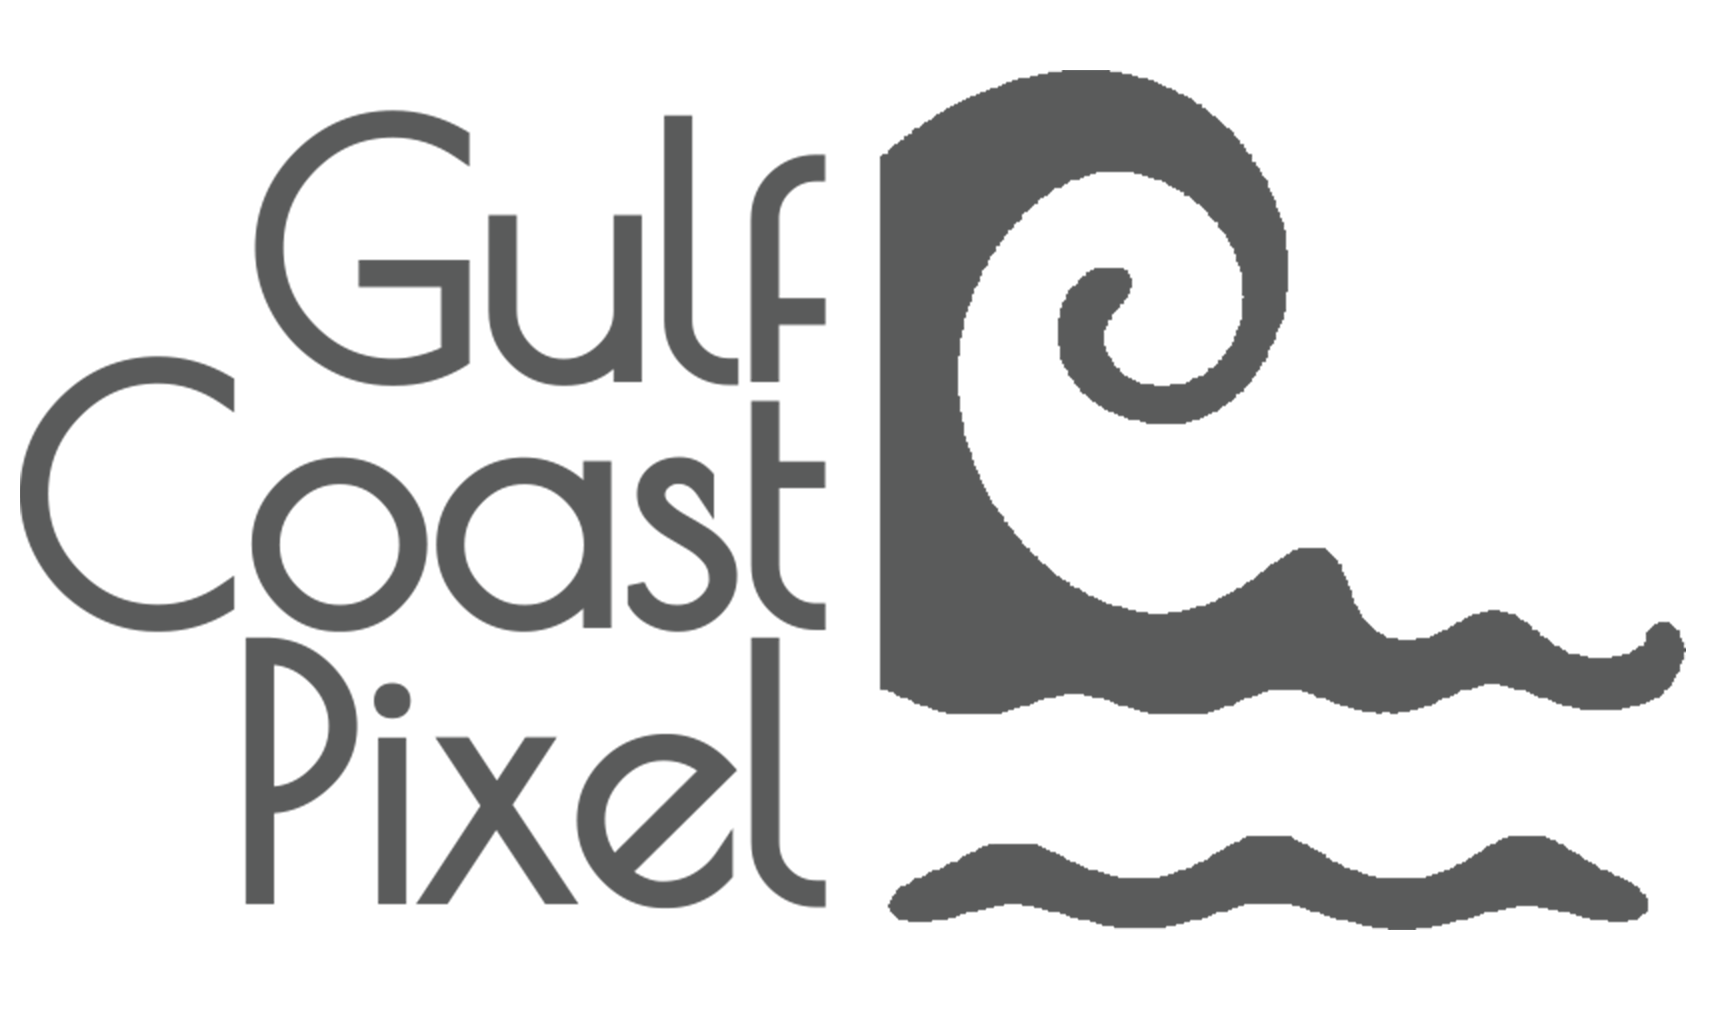 Gulf Coast Pixel